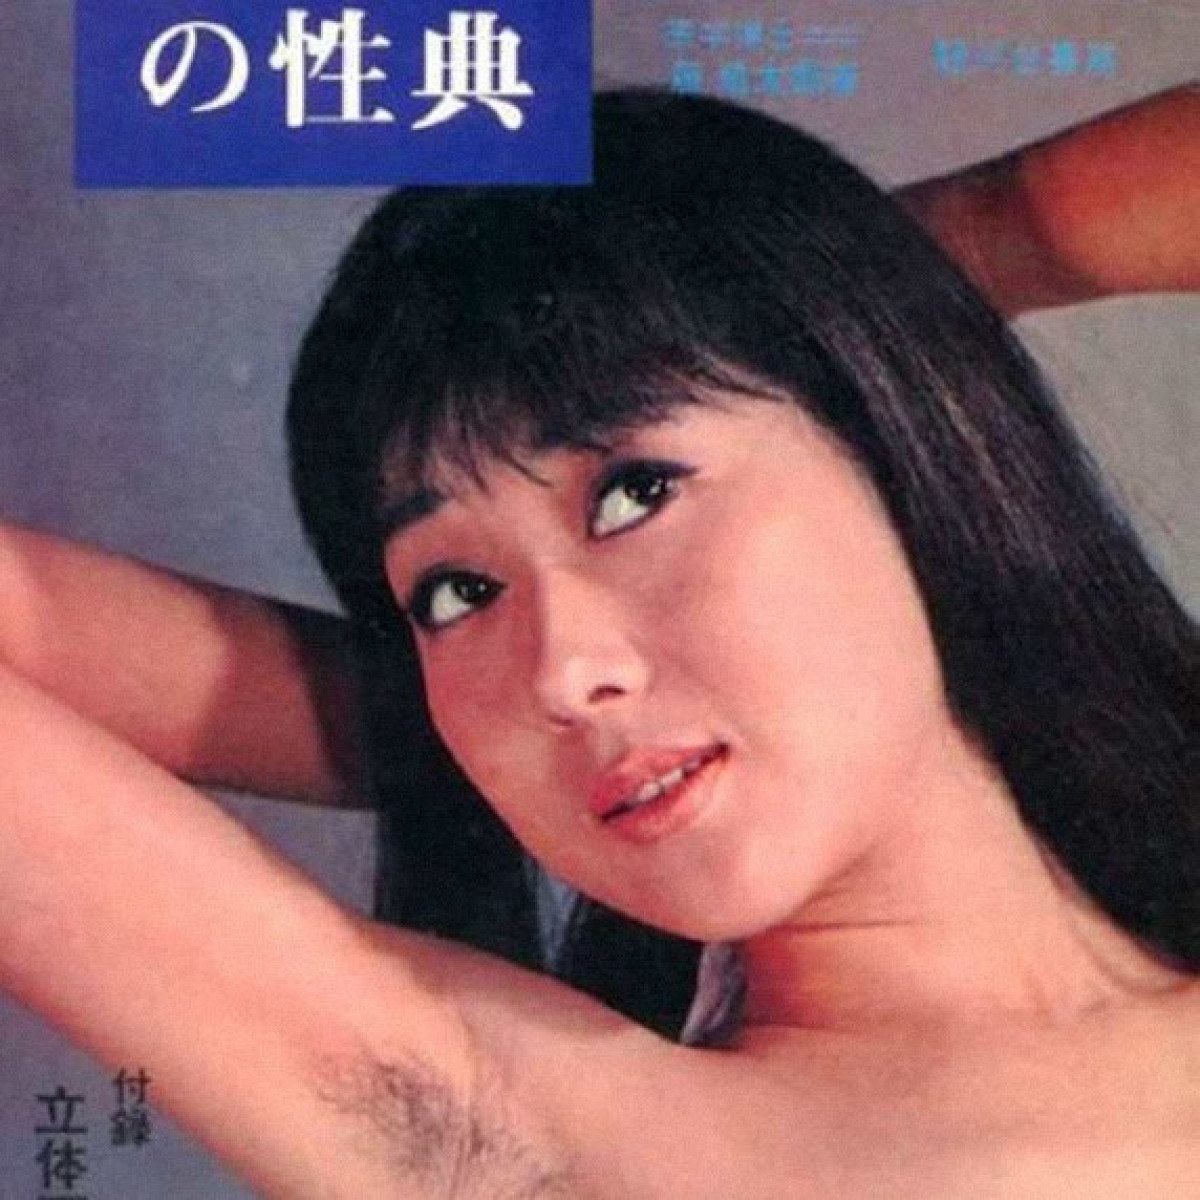 После прочтения сжечь: японский секс-справочник для подростков 1960-х -  Афиша Daily